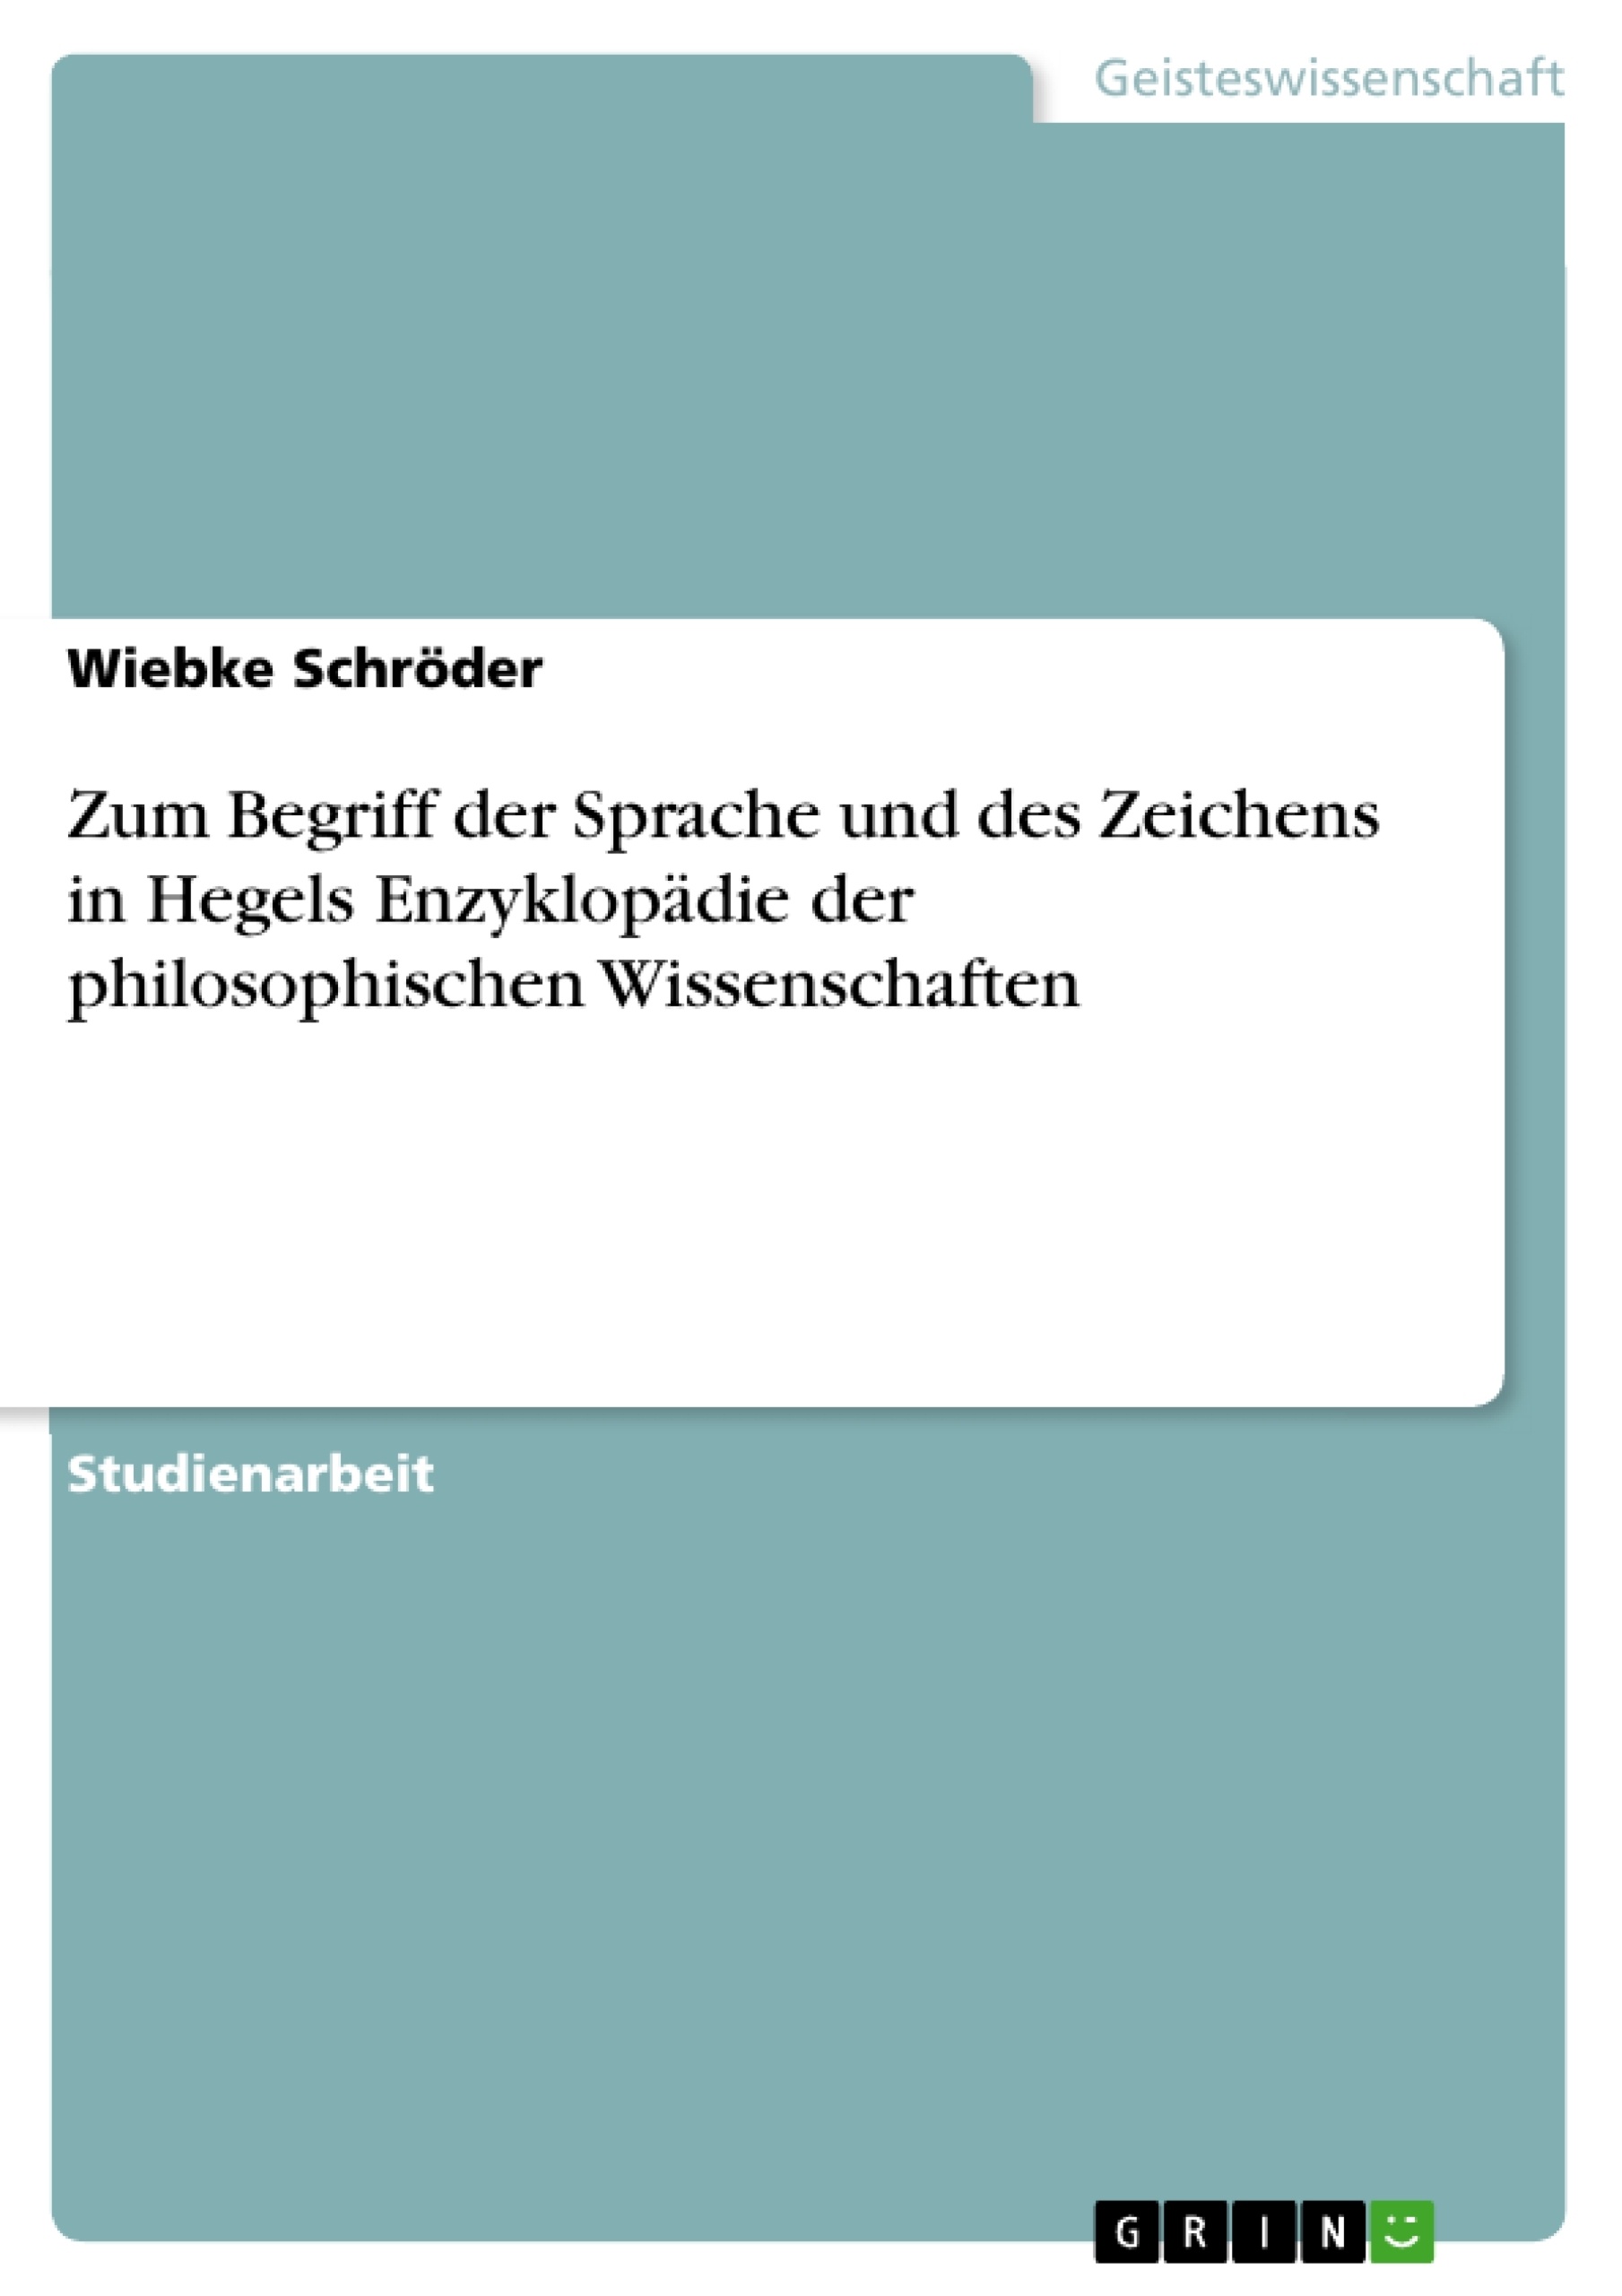 Titre: Zum Begriff der Sprache und des Zeichens in Hegels Enzyklopädie der philosophischen Wissenschaften 